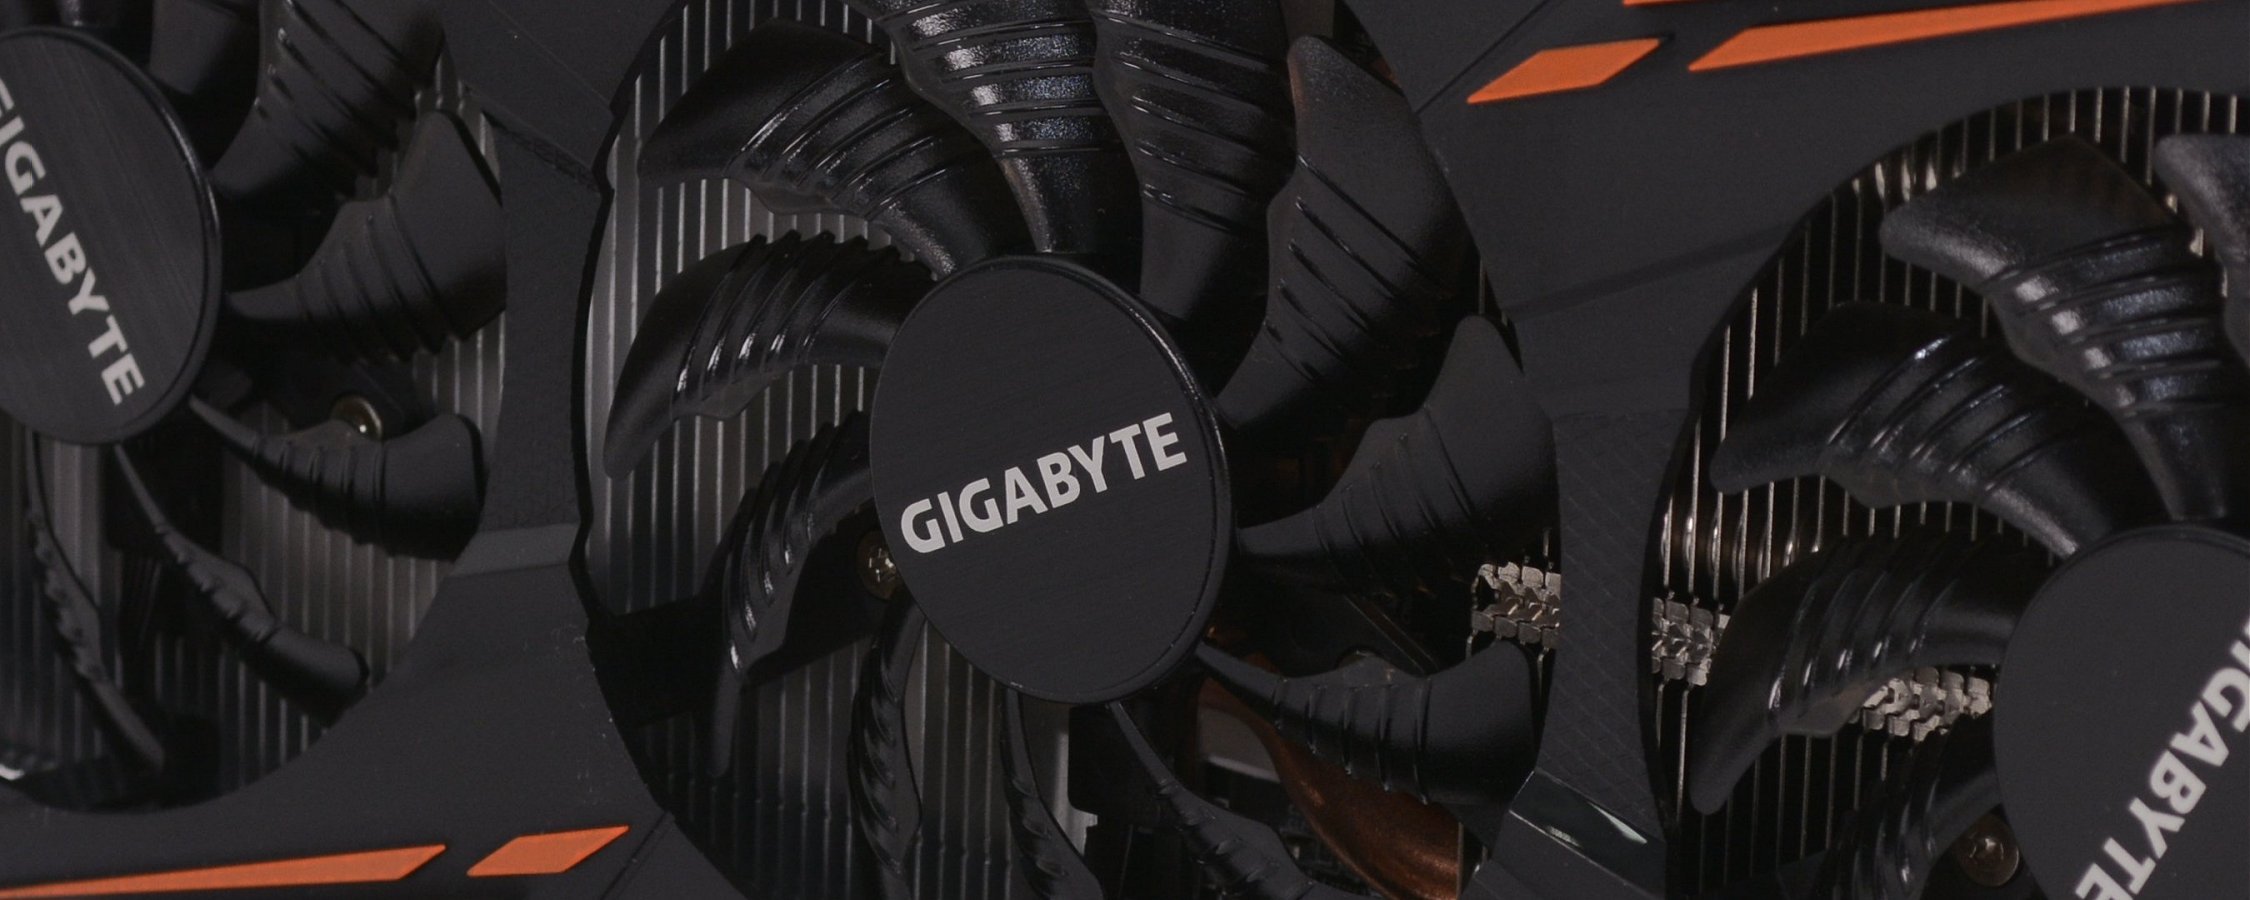 استعراض Gigabyte GeForce GTX 1080 G1 للألعاب 44